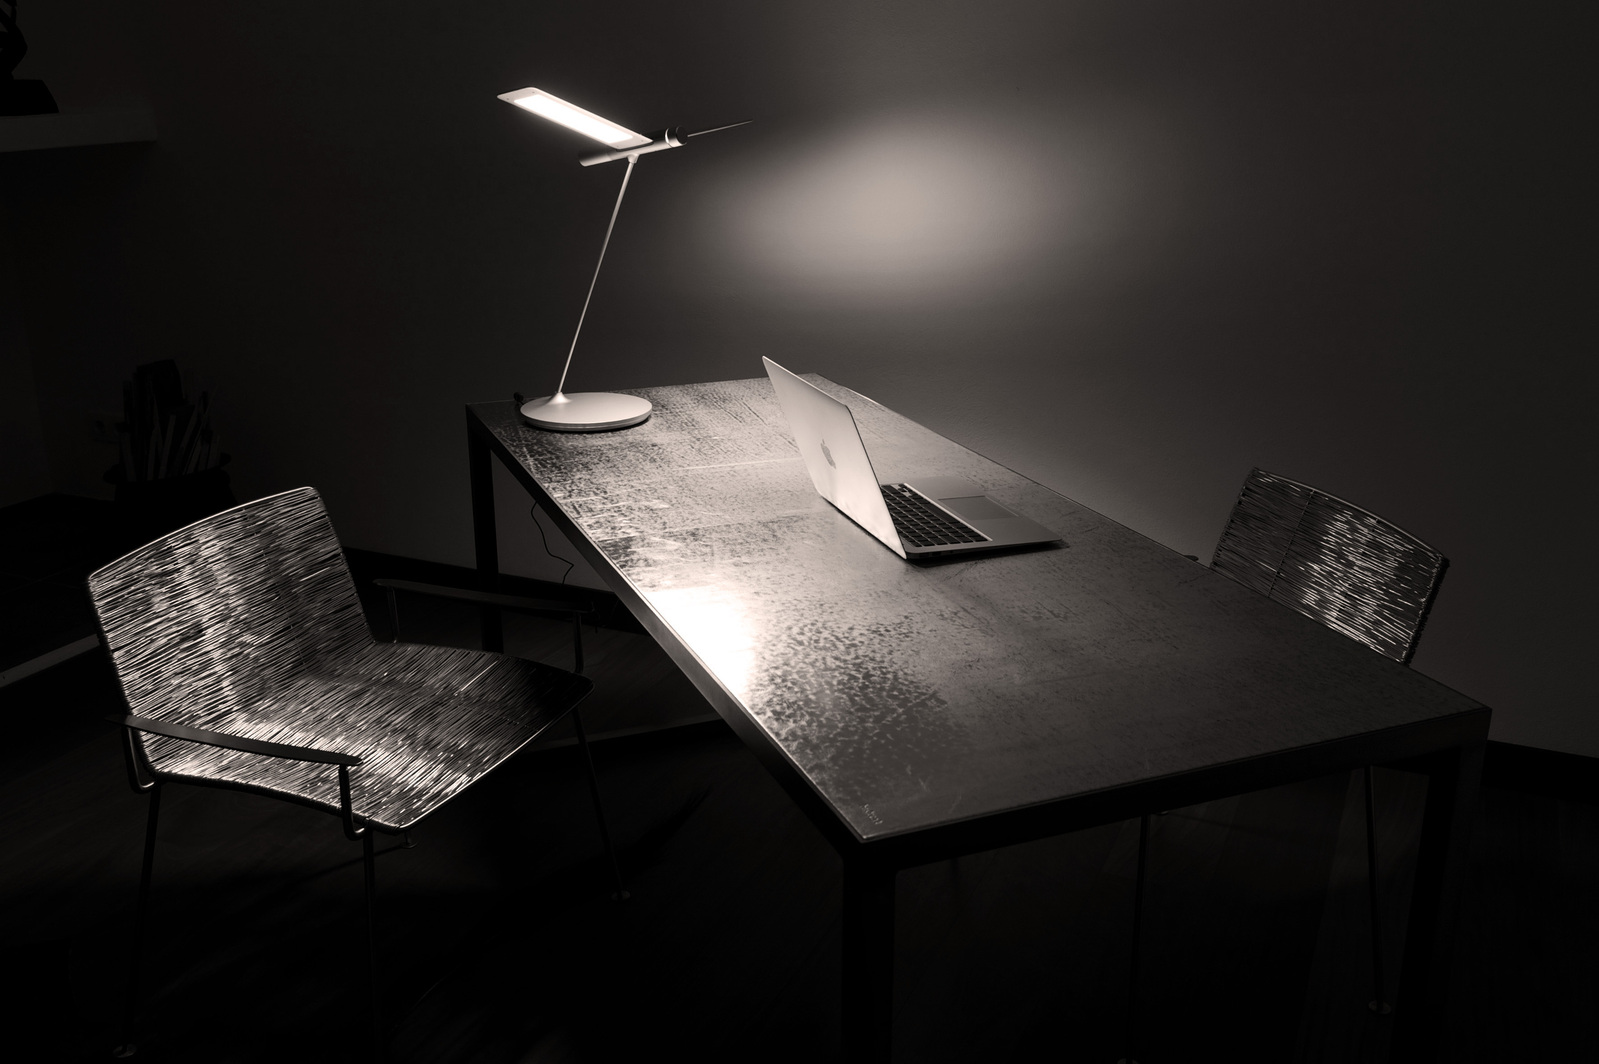 Klassisch Minimalistisch C-Level Büro, Lederschreibtisch Baxter, Stühle von Angoworld, Schreibtischleuchte, Seagull Table Light, QisDesign